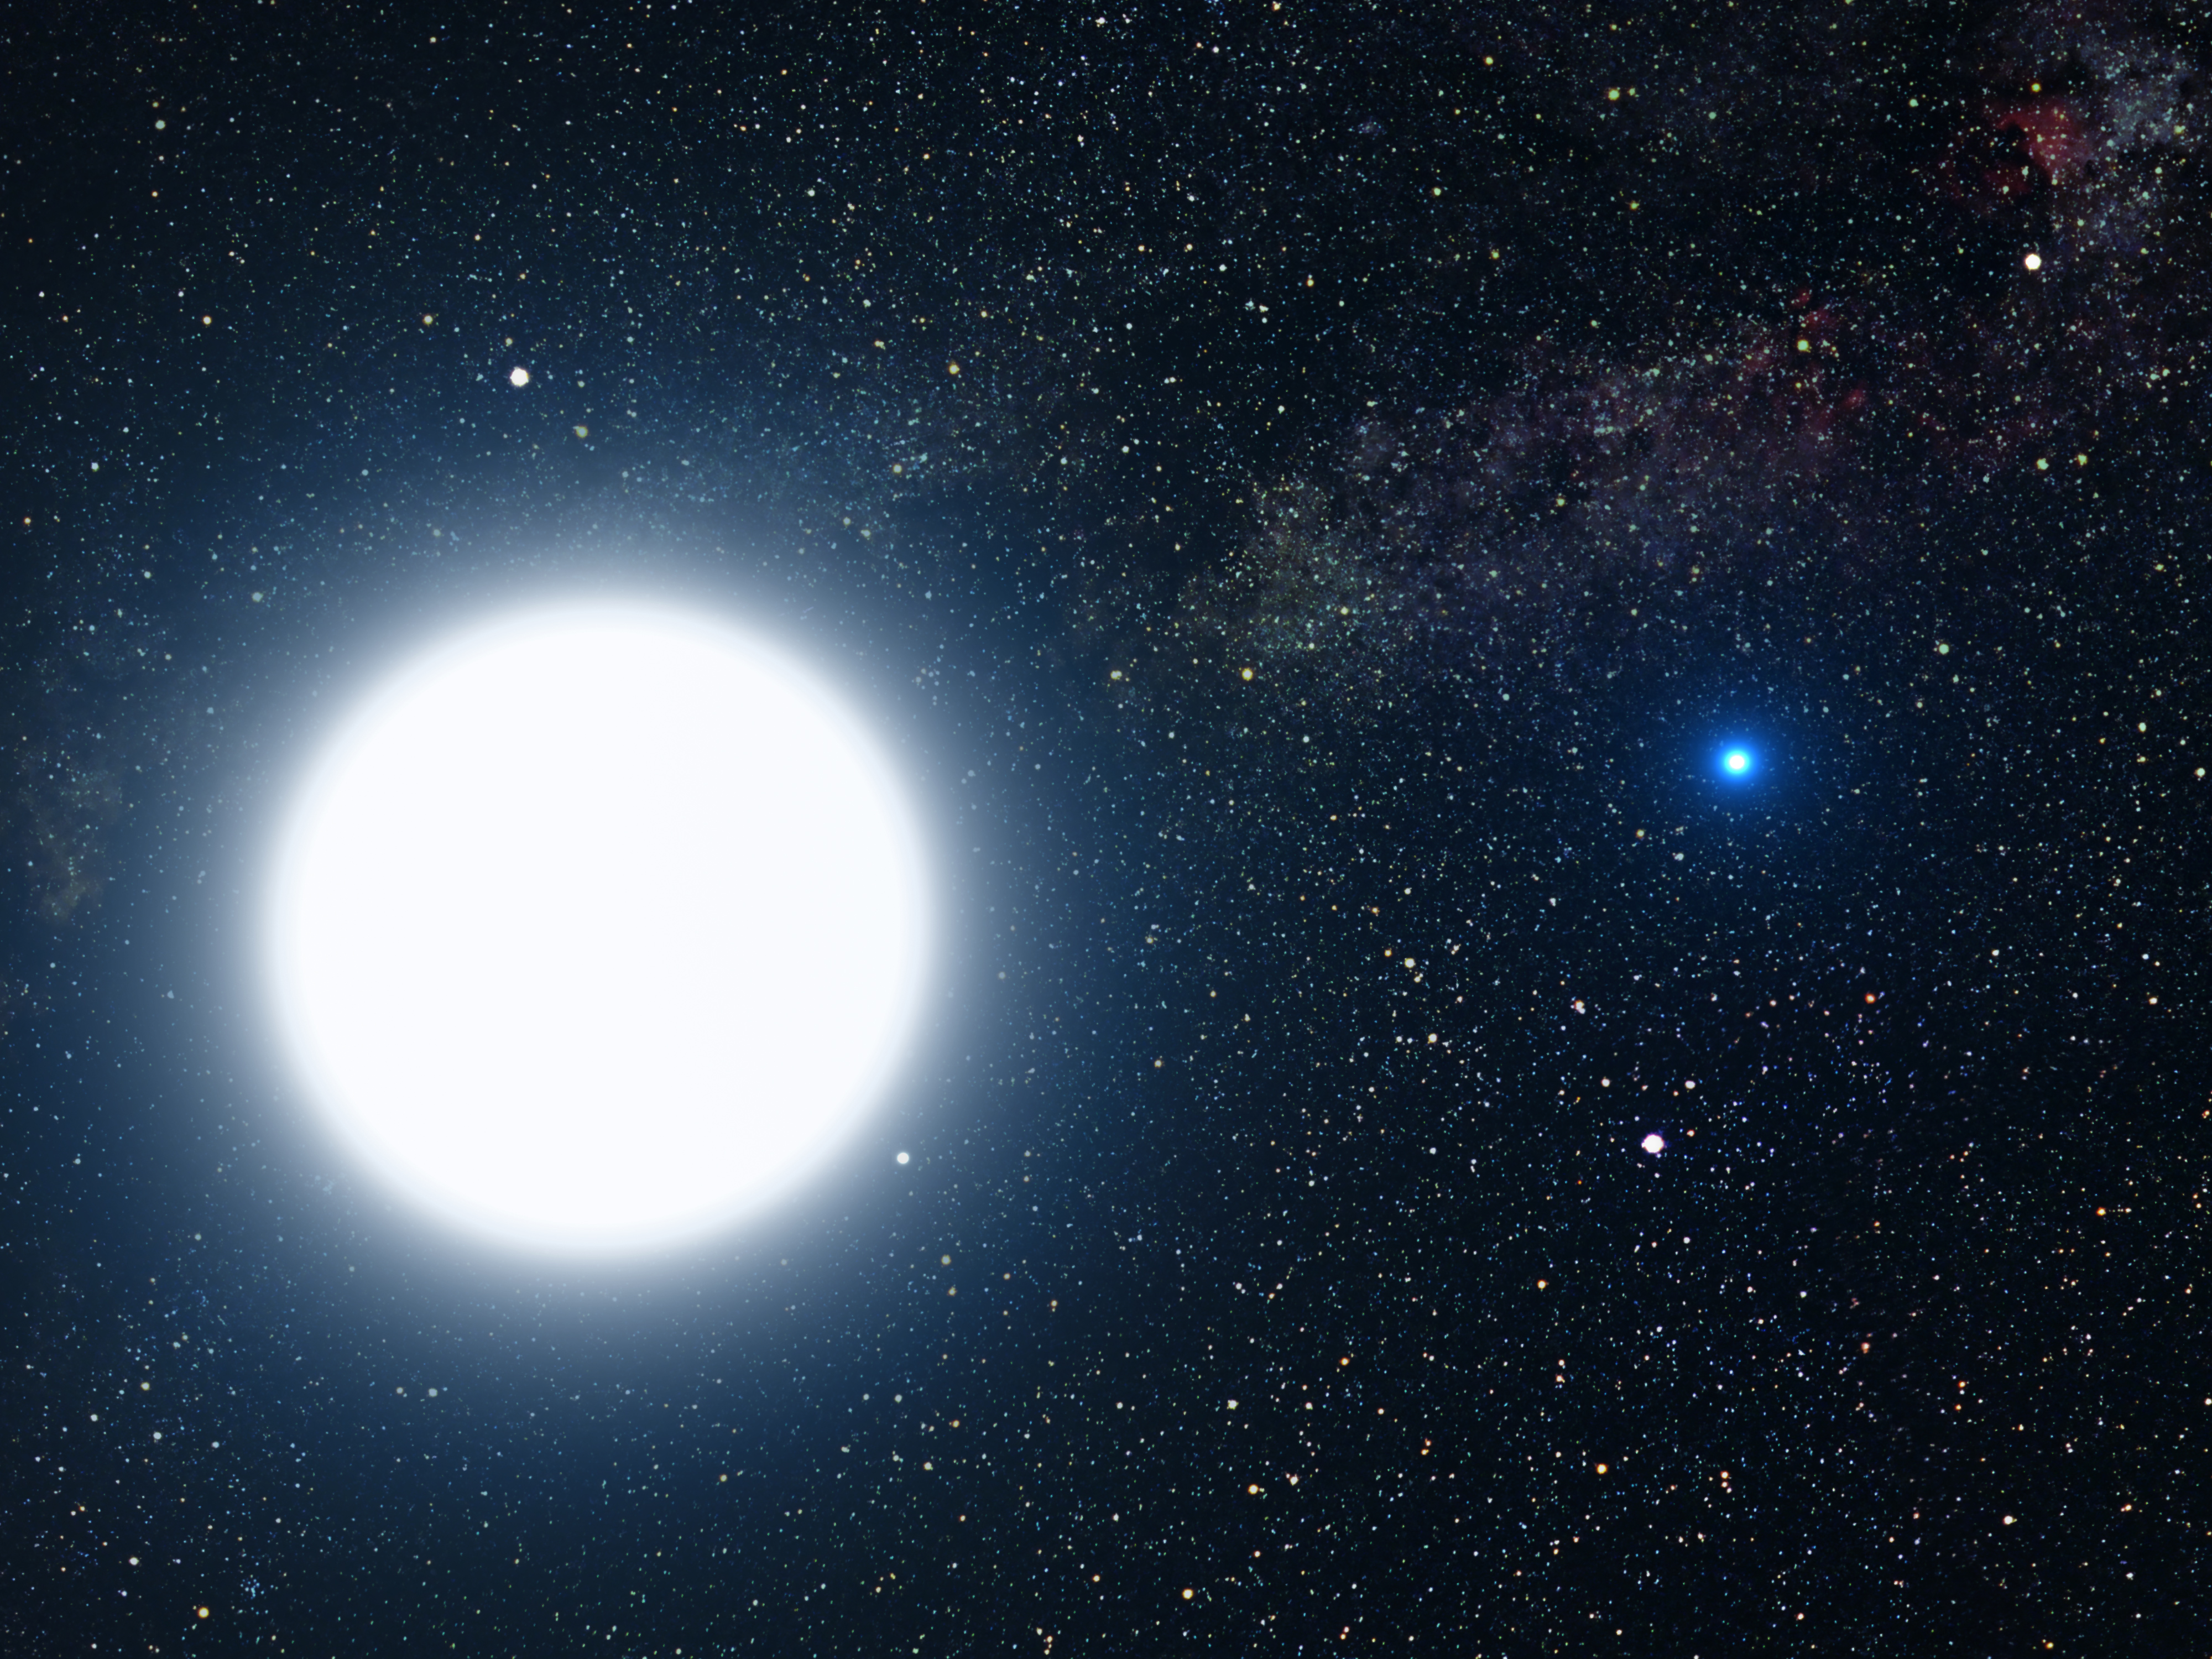 La enana blanca Sirio B, breve historia sobre su descubrimiento – La Conexión Cósmica